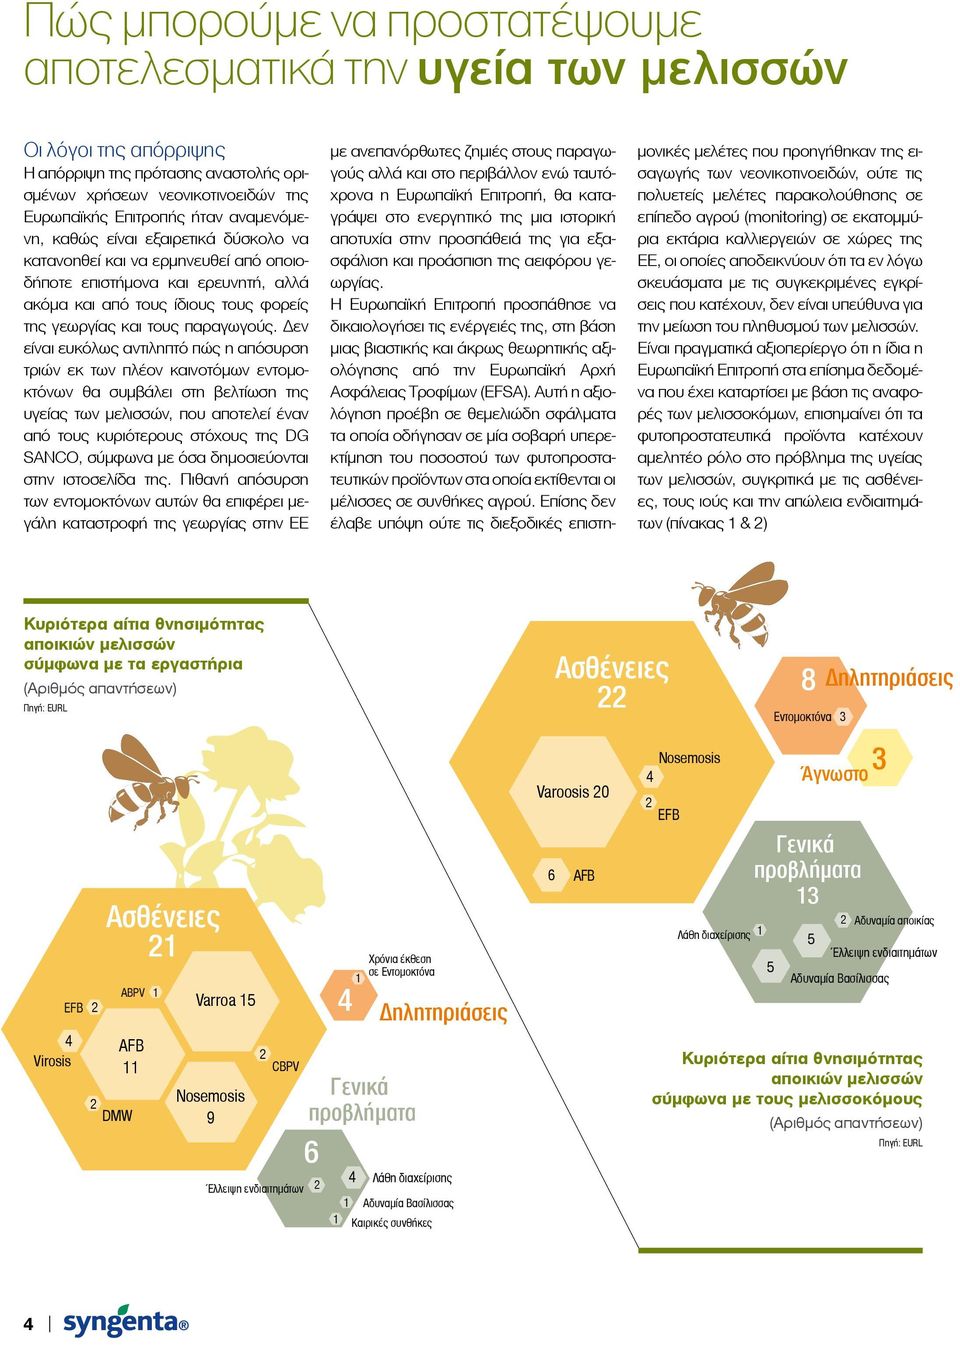 Δεν είναι ευκόλως αντιληπτό πώς η απόσυρση τριών εκ των πλέον καινοτόμων εντομοκτόνων θα συμβάλει στη βελτίωση της υγείας των μελισσών, που αποτελεί έναν από τους κυριότερους στόχους της DG SANCO,